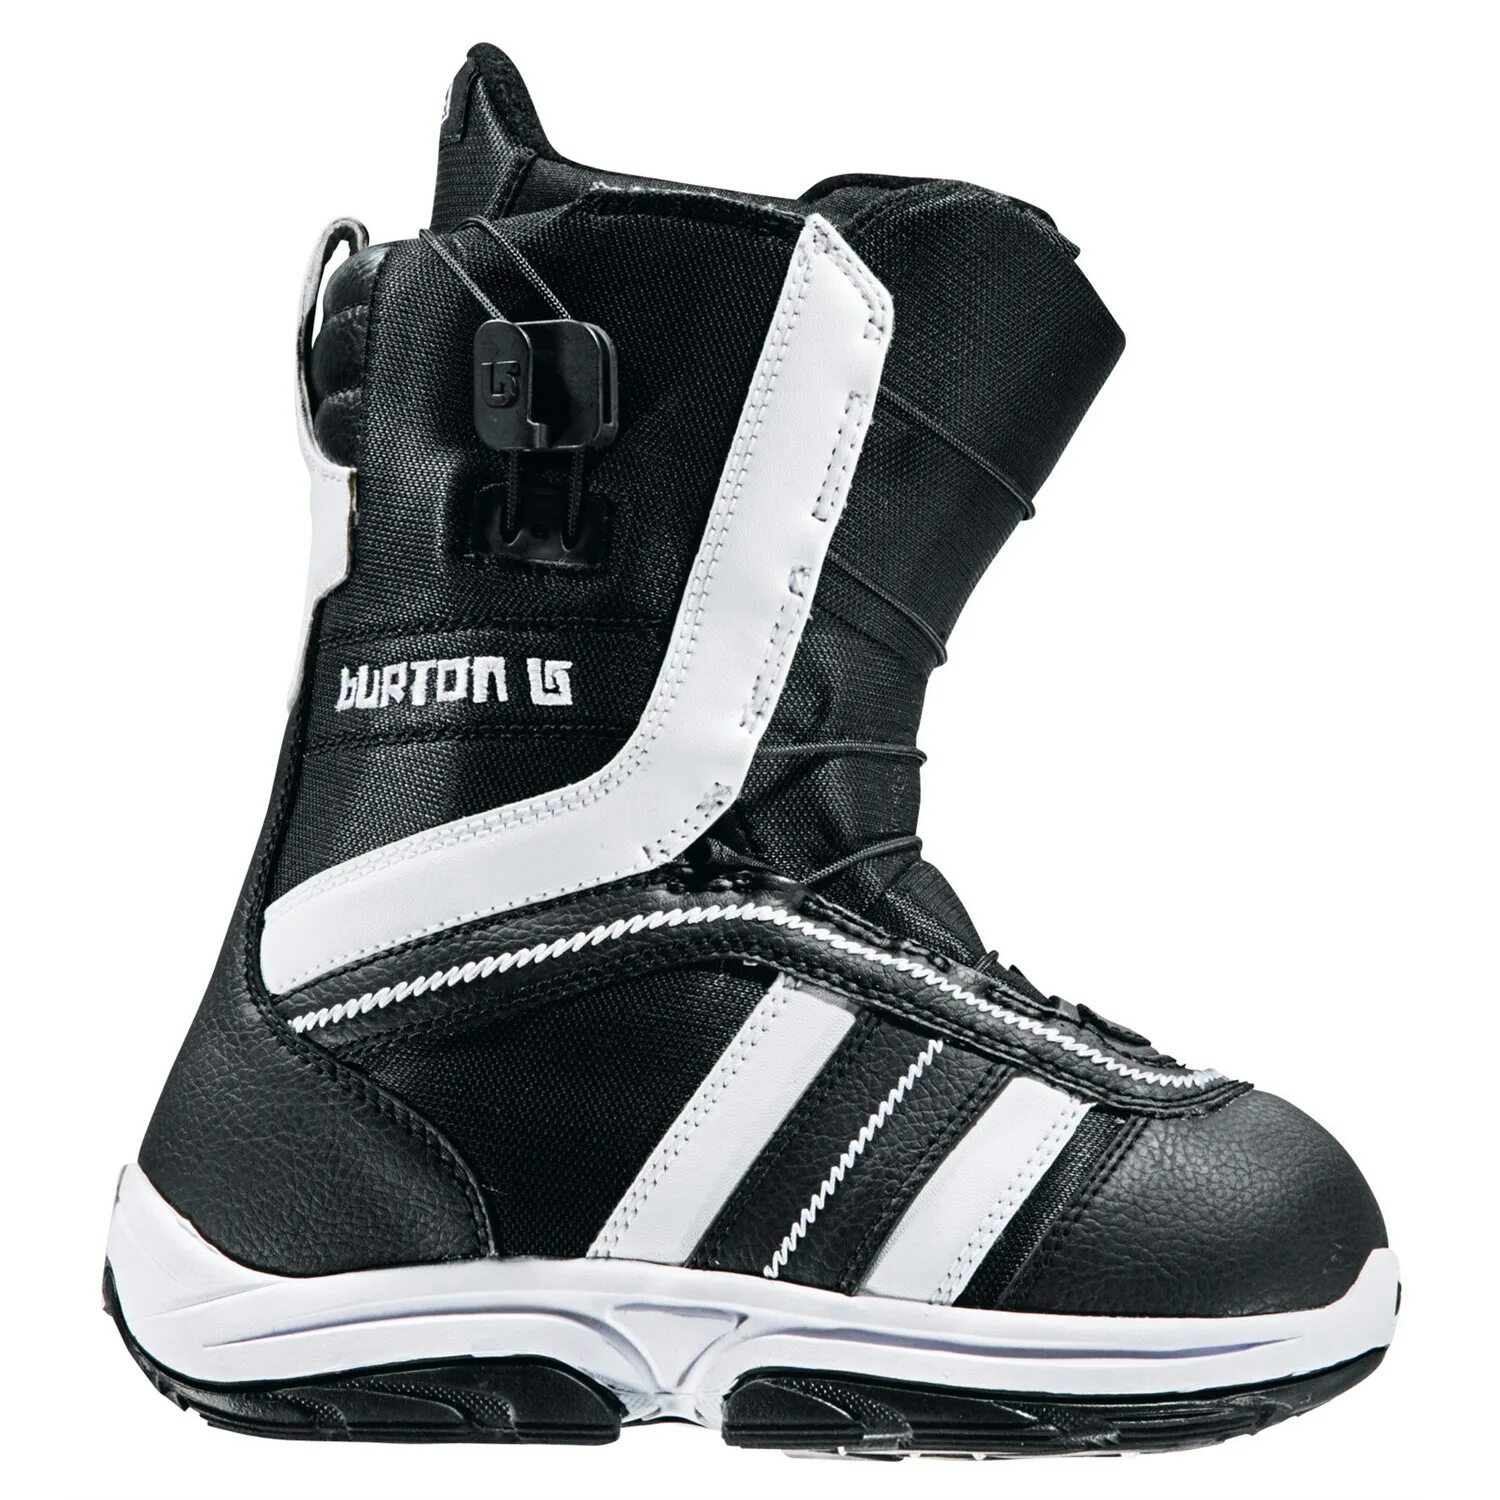 Burton ruler. Burton Ruler 2022. Burton Ruler smalls ботинки для сноуборда. Burton Concord Snowboard Boots. Ботинки Burton 2009.